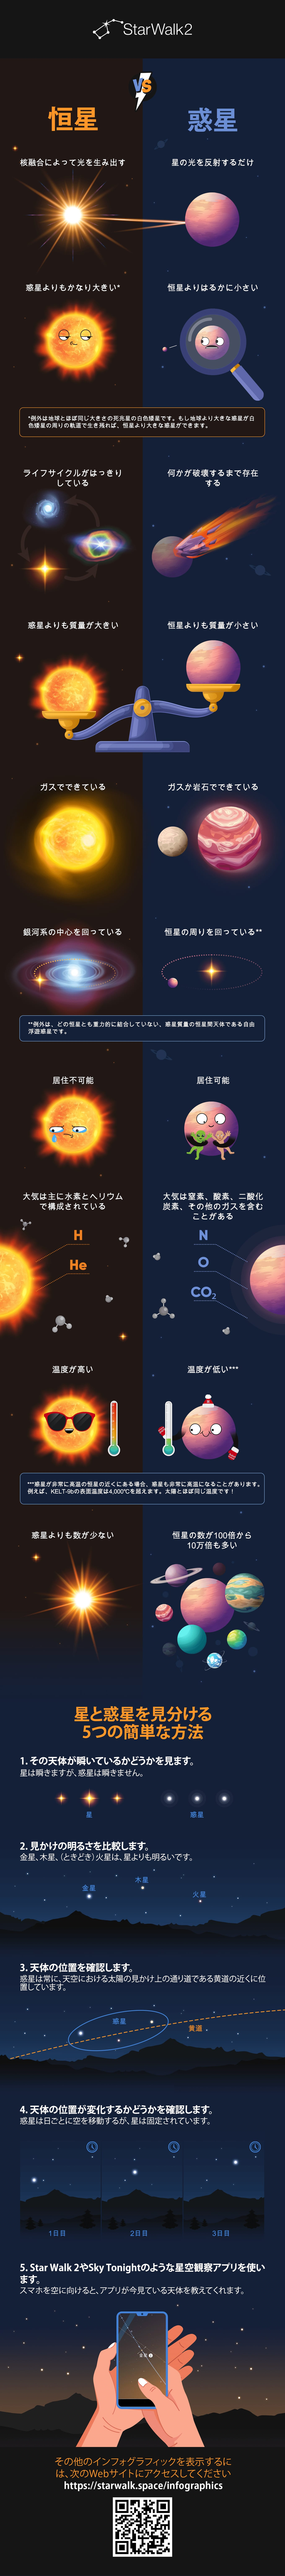 Stars VS Planets